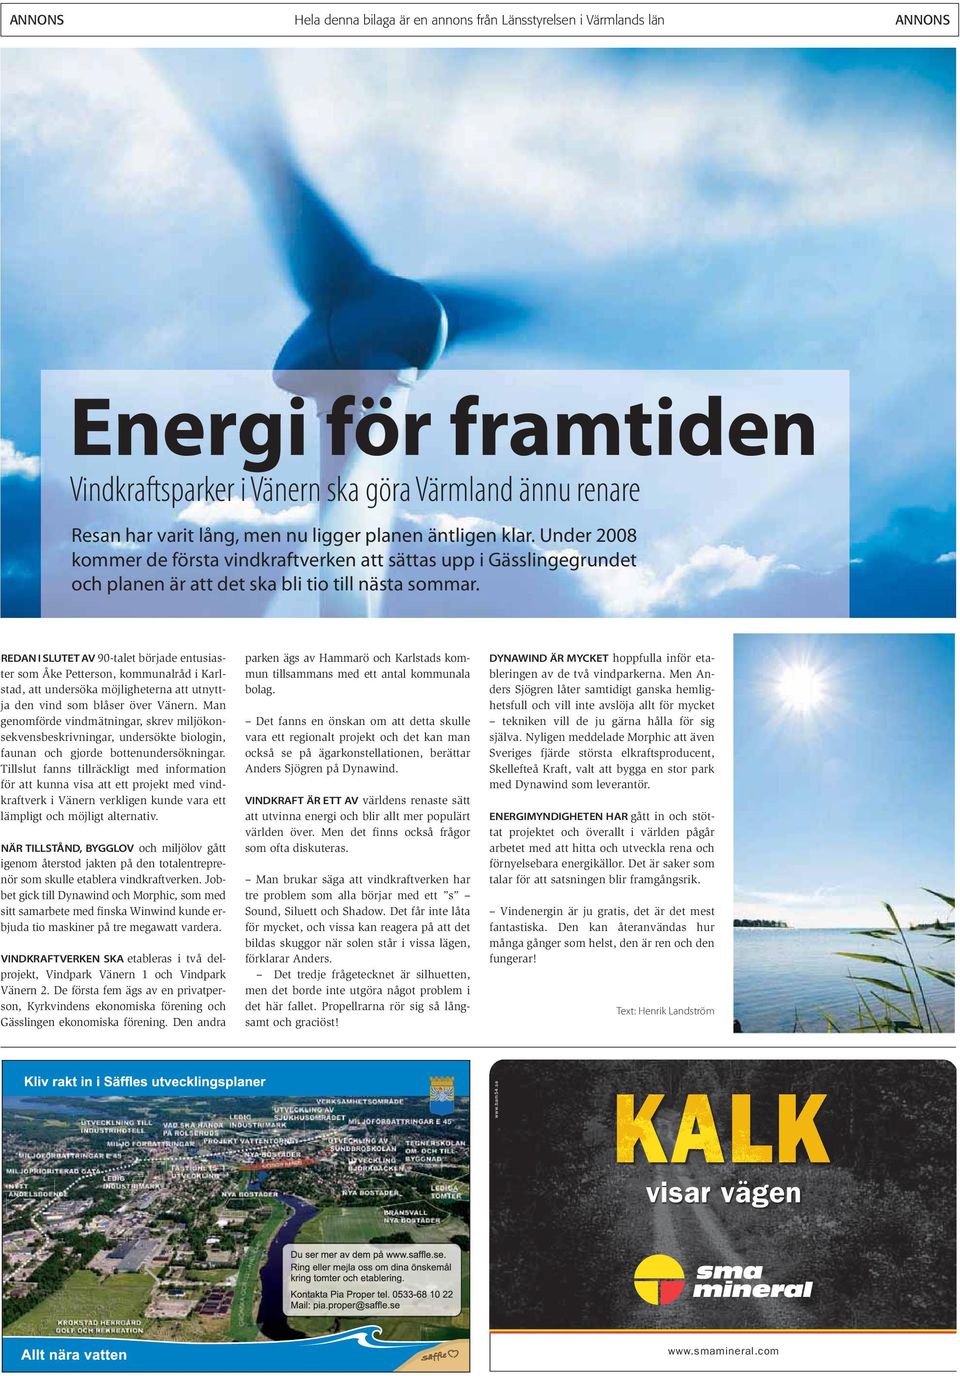 REDAN I SLUTET AV 90-talet började entusiaster som Åke Petterson, kommunalråd i Karlstad, att undersöka möjligheterna att utnyttja den vind som blåser över Vänern.